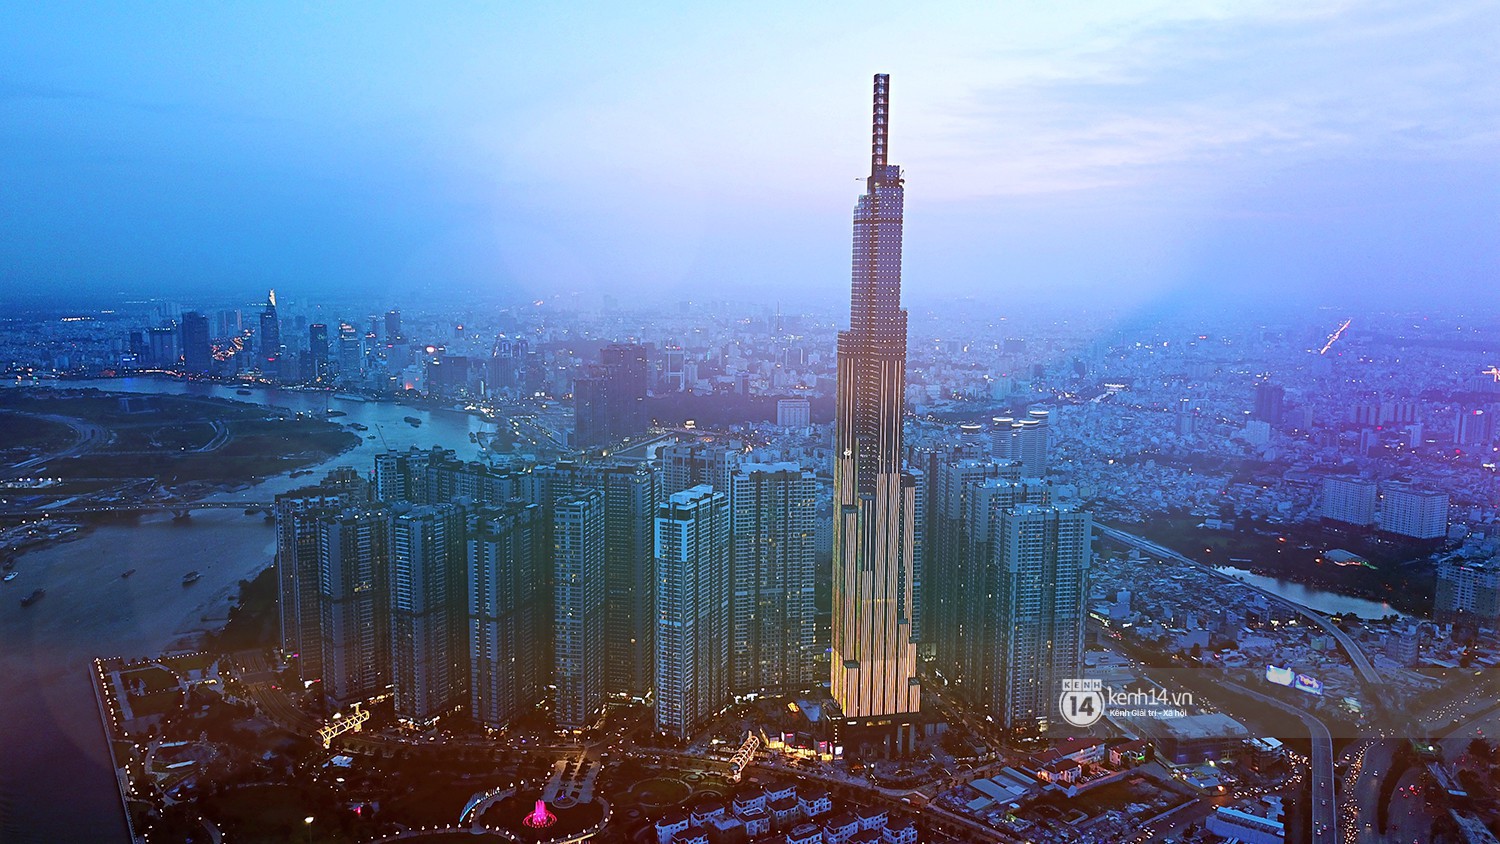 Chùm ảnh: Toàn cảnh tòa nhà 81 tầng cao nhất Việt Nam ngay trước ngày khai trương ở Sài Gòn - Ảnh 1.